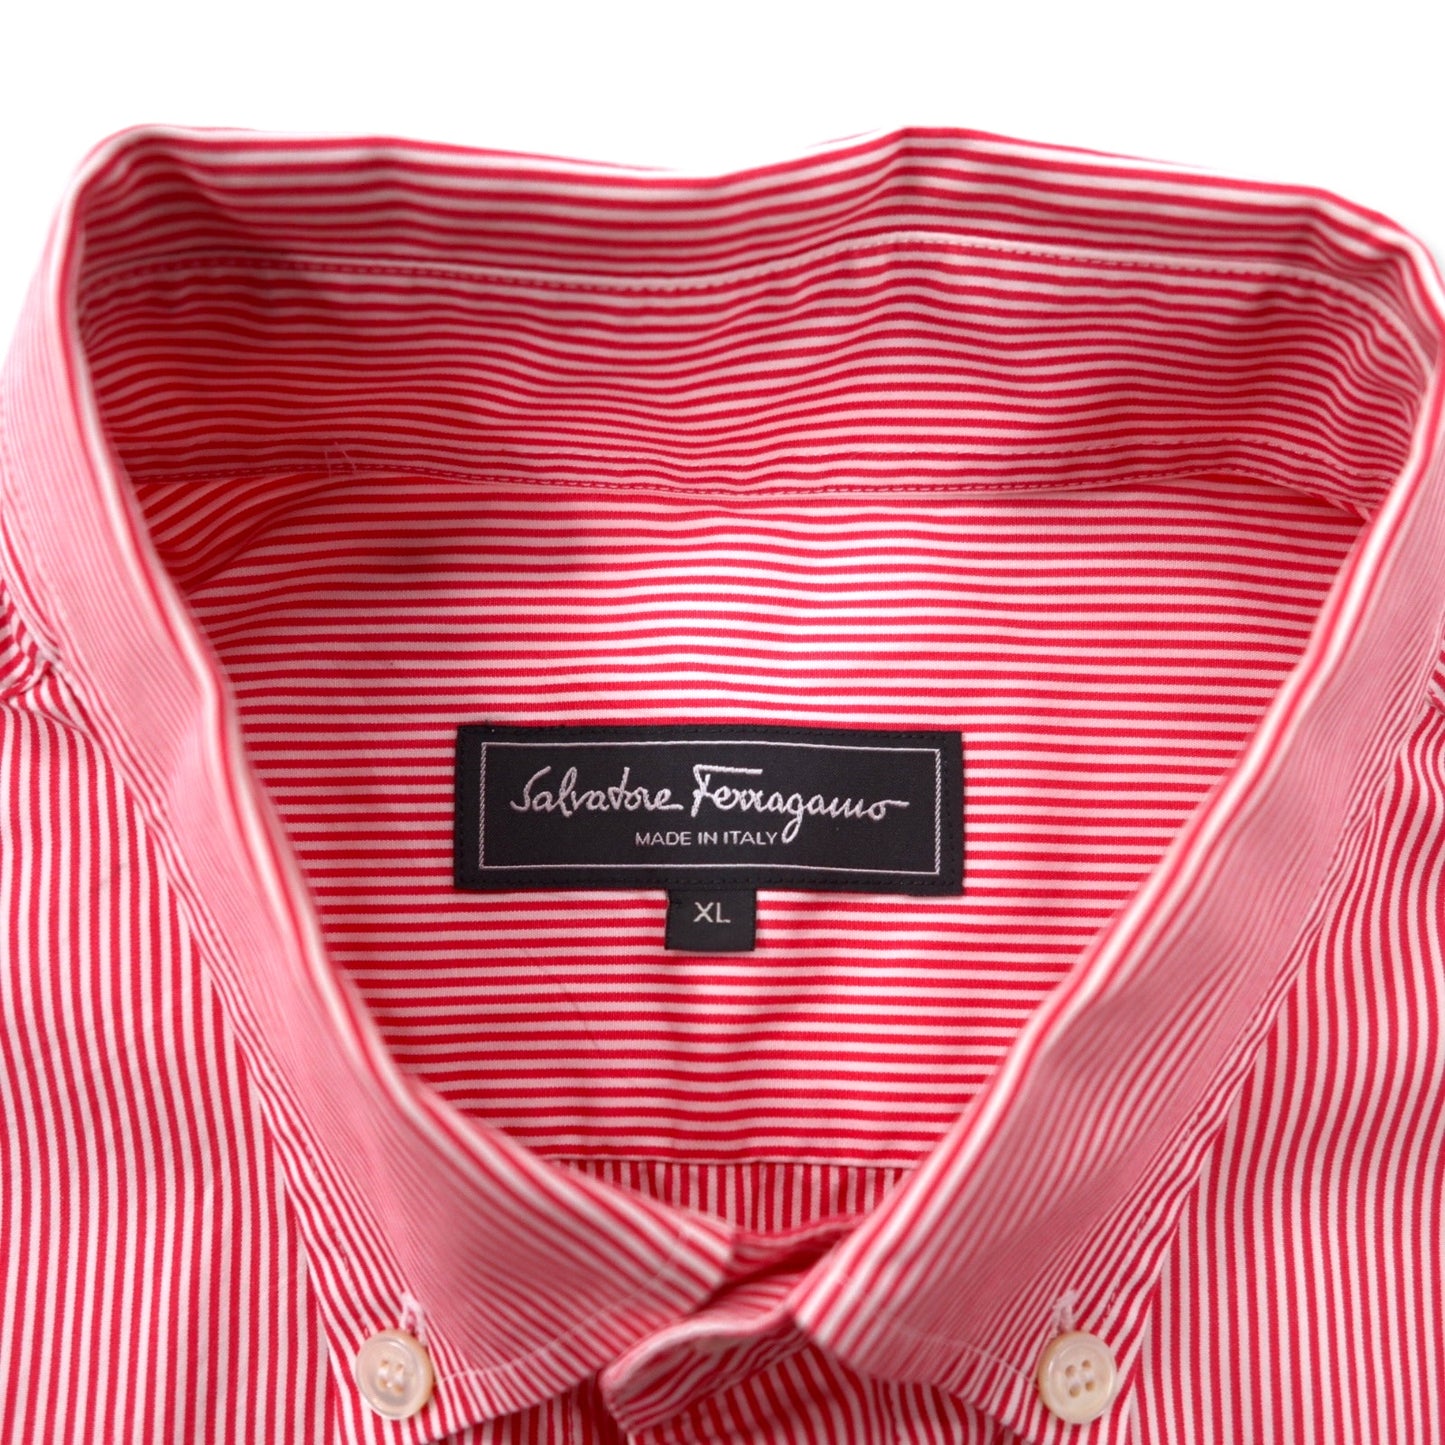 Salvatore Ferragamo イタリア製 ボタンダウンシャツ XL ピンク ストライプ コットン TAILOR FIT ワンポイントロゴ刺繍